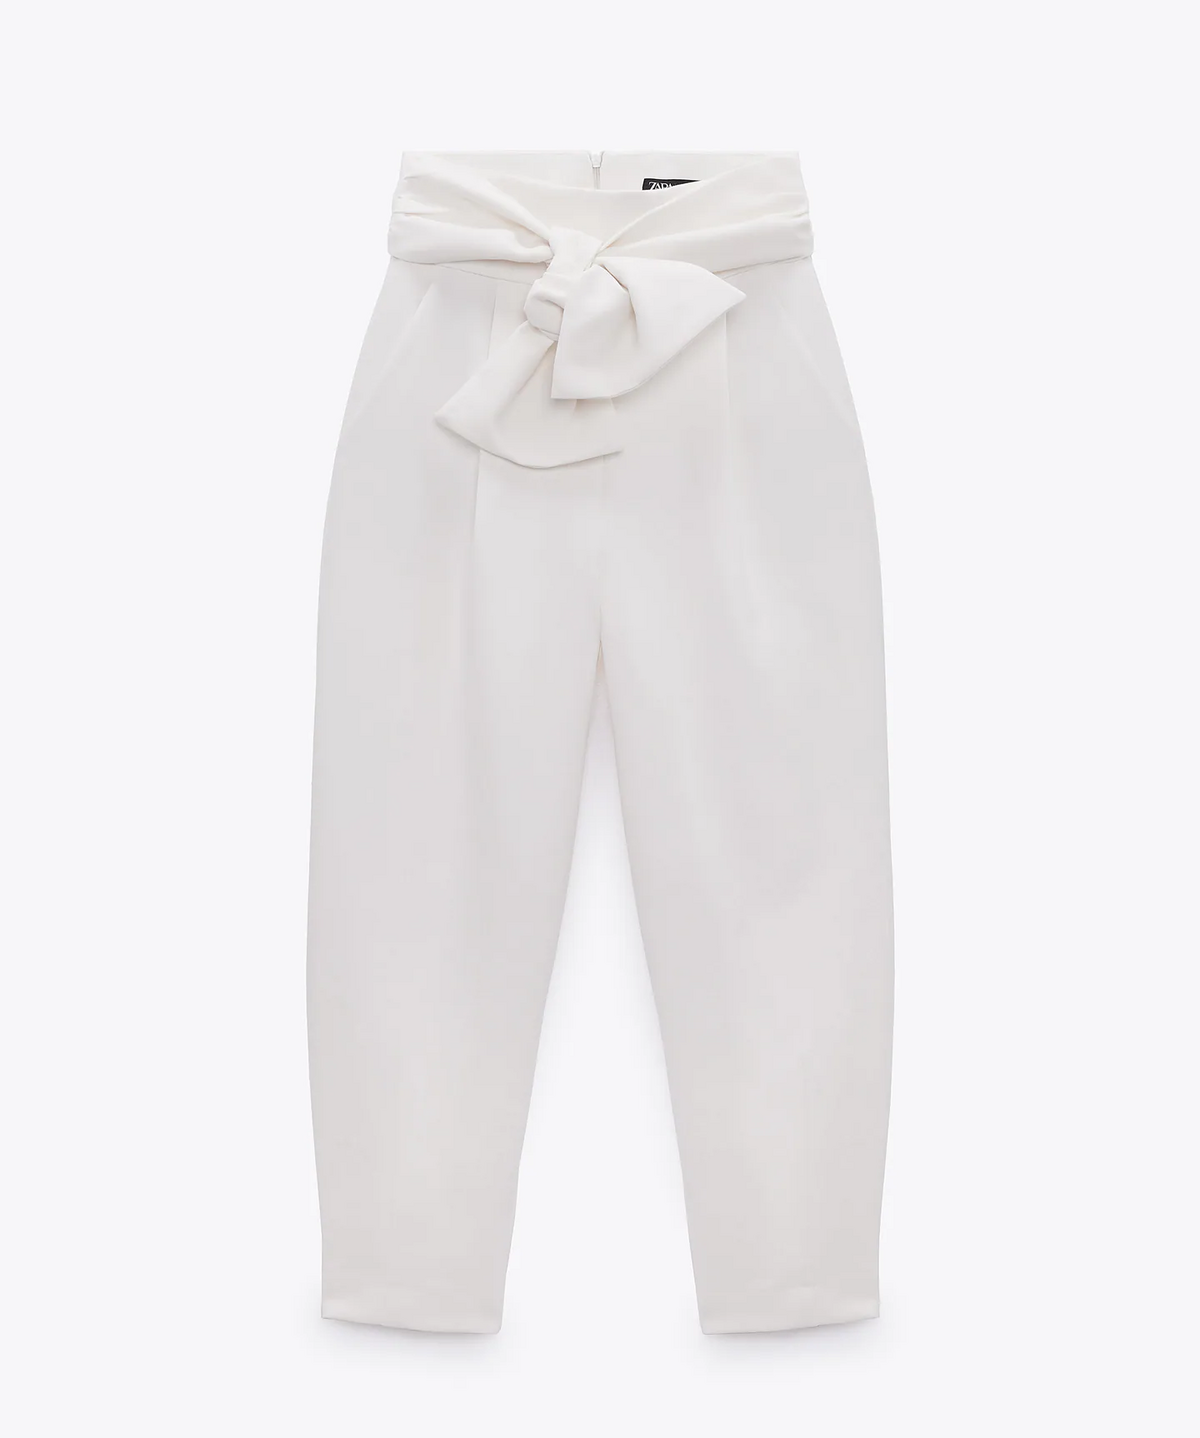 Estos son los pantalones blancos de Zara que más estilizan y que han  conquistado a las mujeres mayores de 50